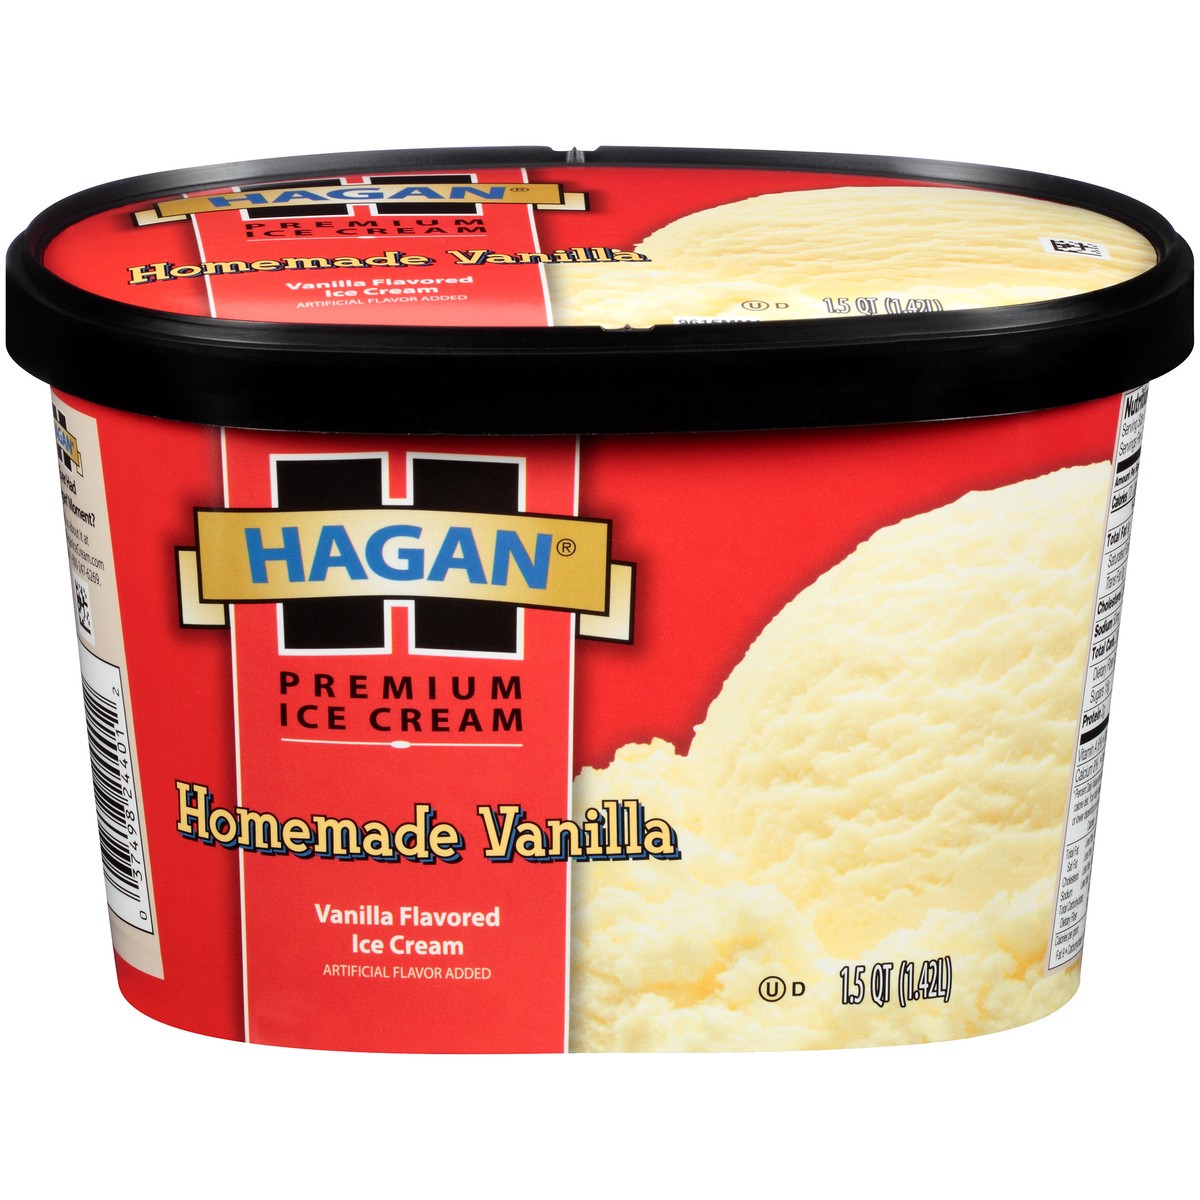 slide 1 of 10, Hagan Homemade Vanilla Premium Ice Cream 1.5 qt. Tub, 1.42 liter